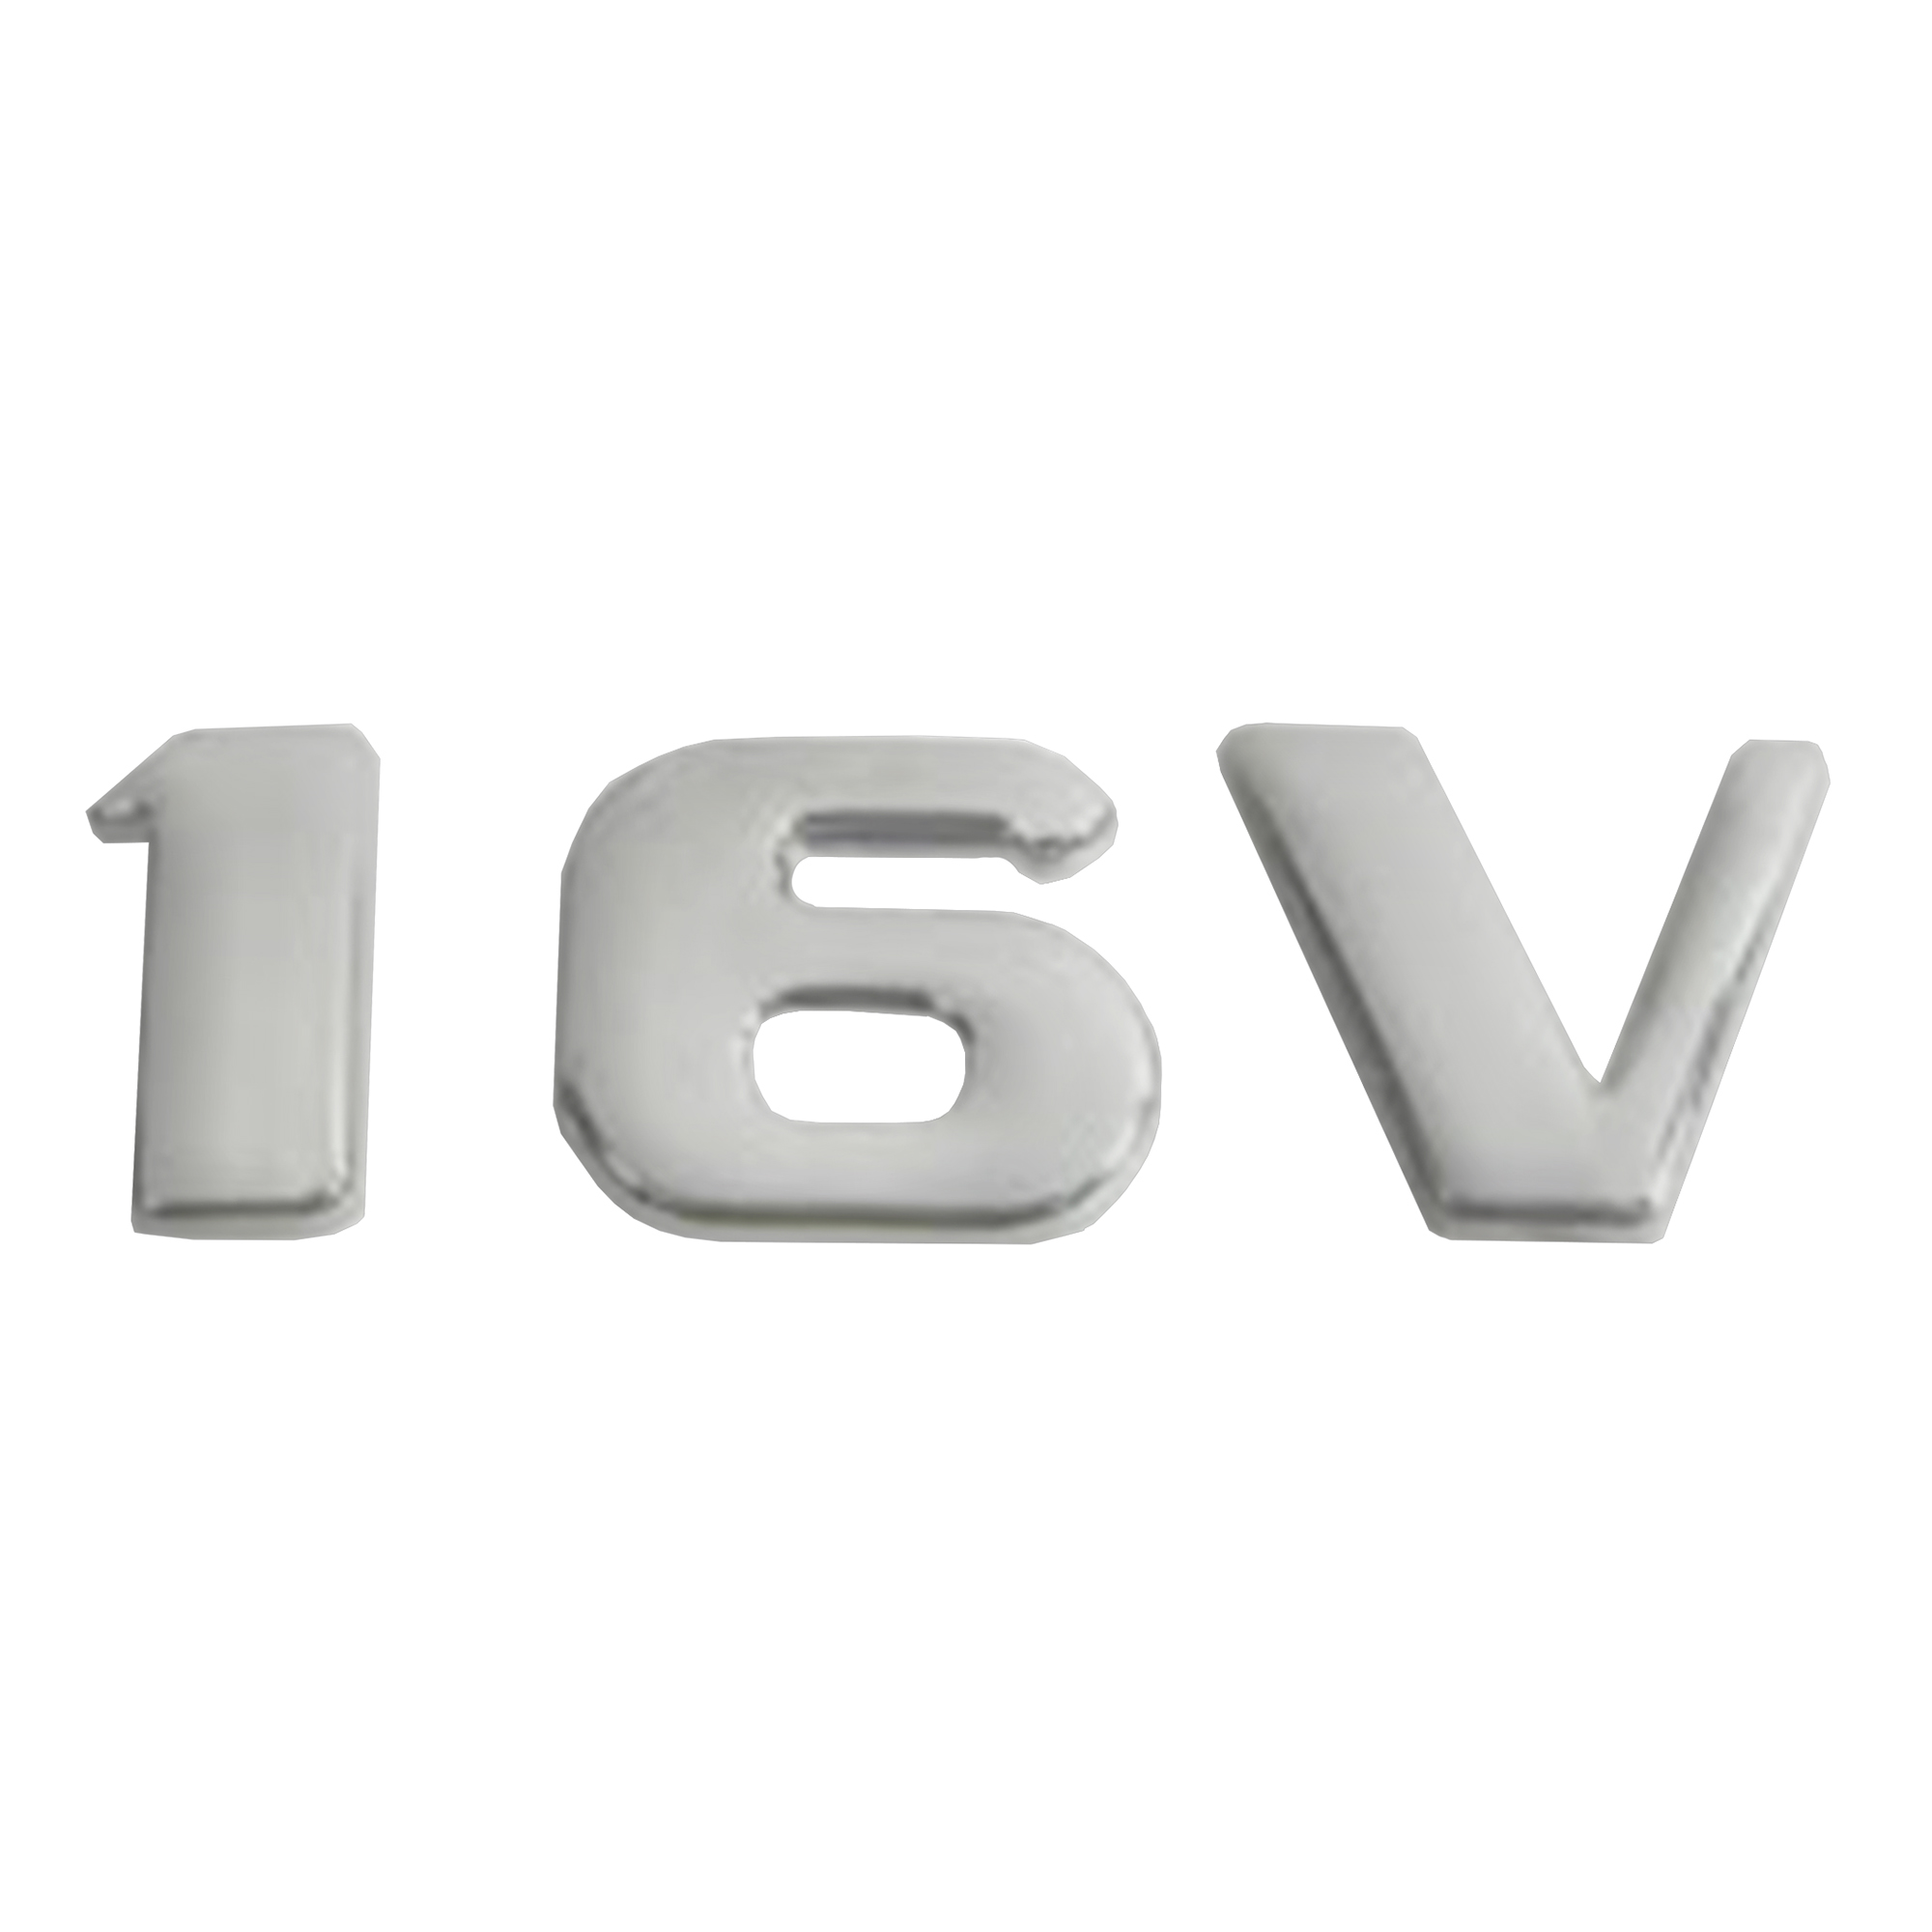 آرم خودرو بیلگین طرح 16 وی کد F16v01